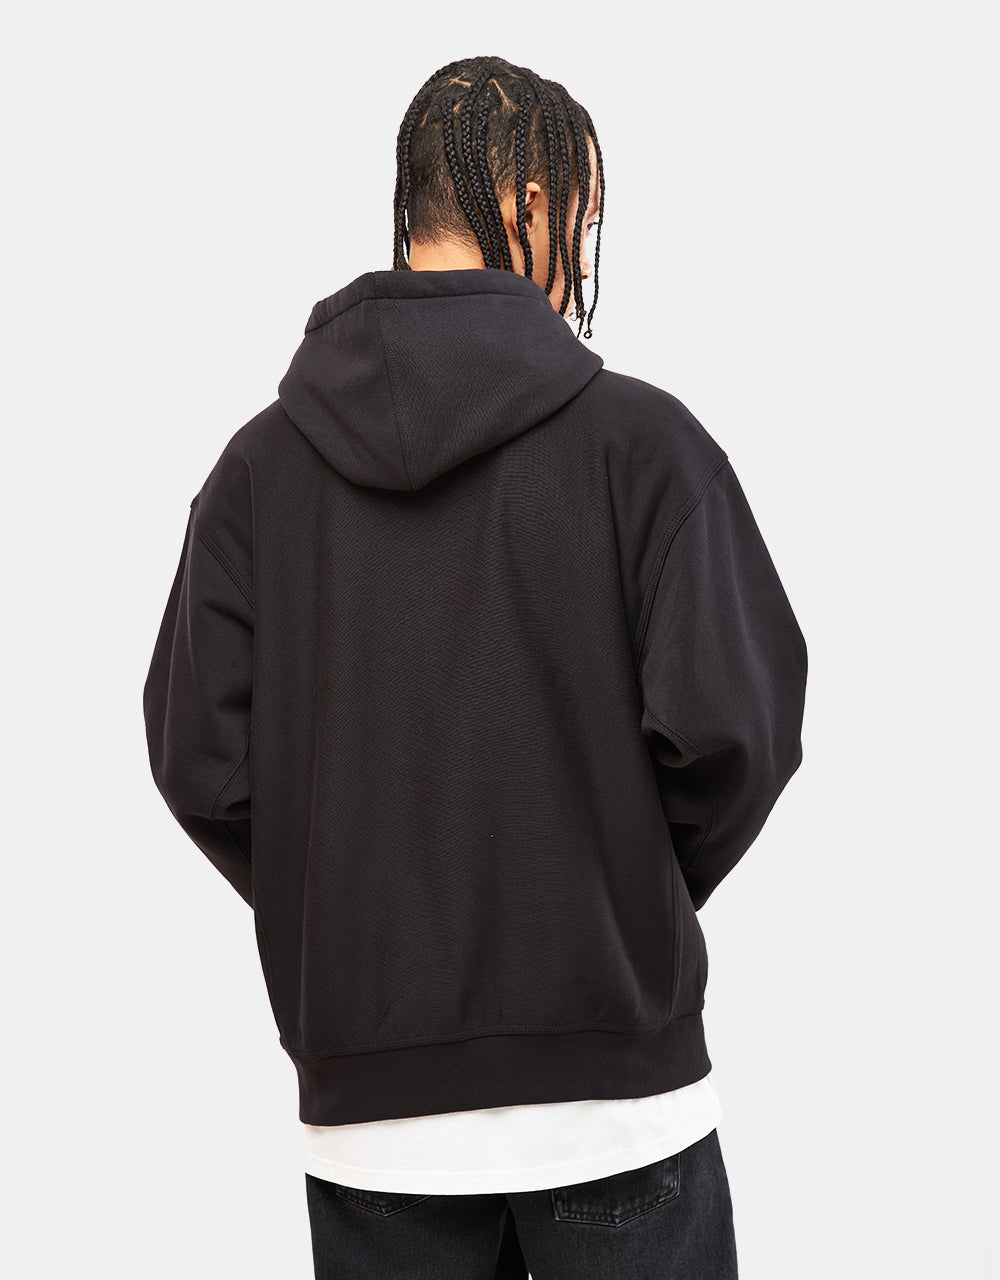 Carhartt WIP Hooded American Script Sweatshirt - Black